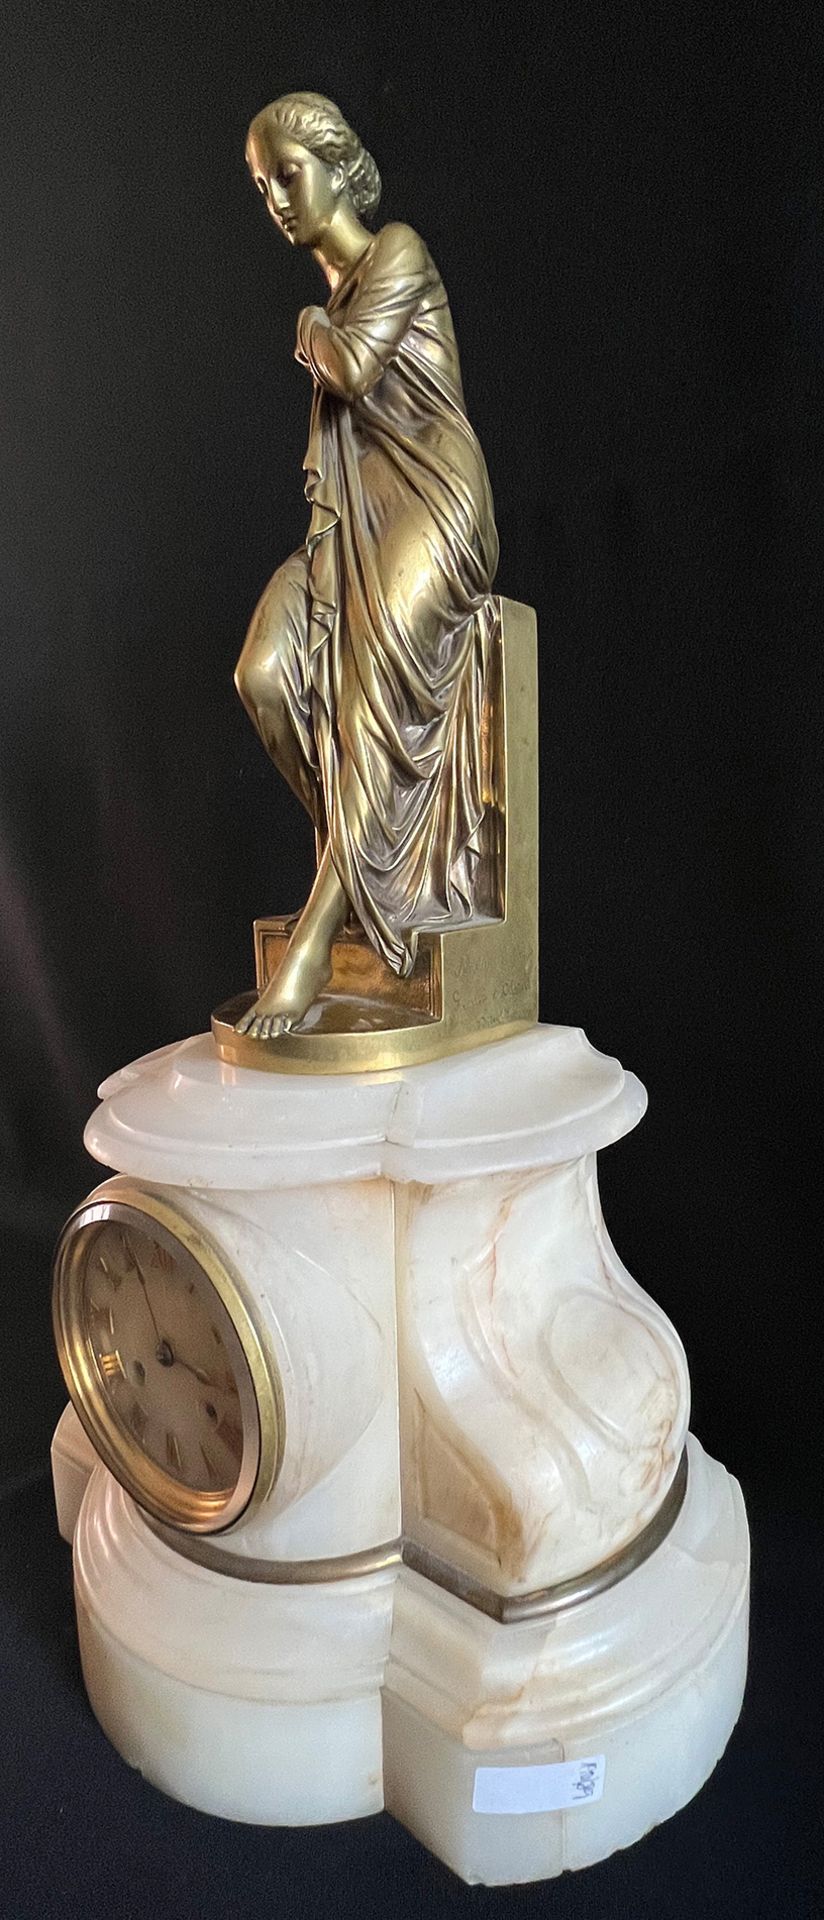 Frankreich, 19. Jh., Kaminuhr, weißer Marmorsockel, mit antik gewandeter Frauenfigur, Messingbronze, - Bild 5 aus 7